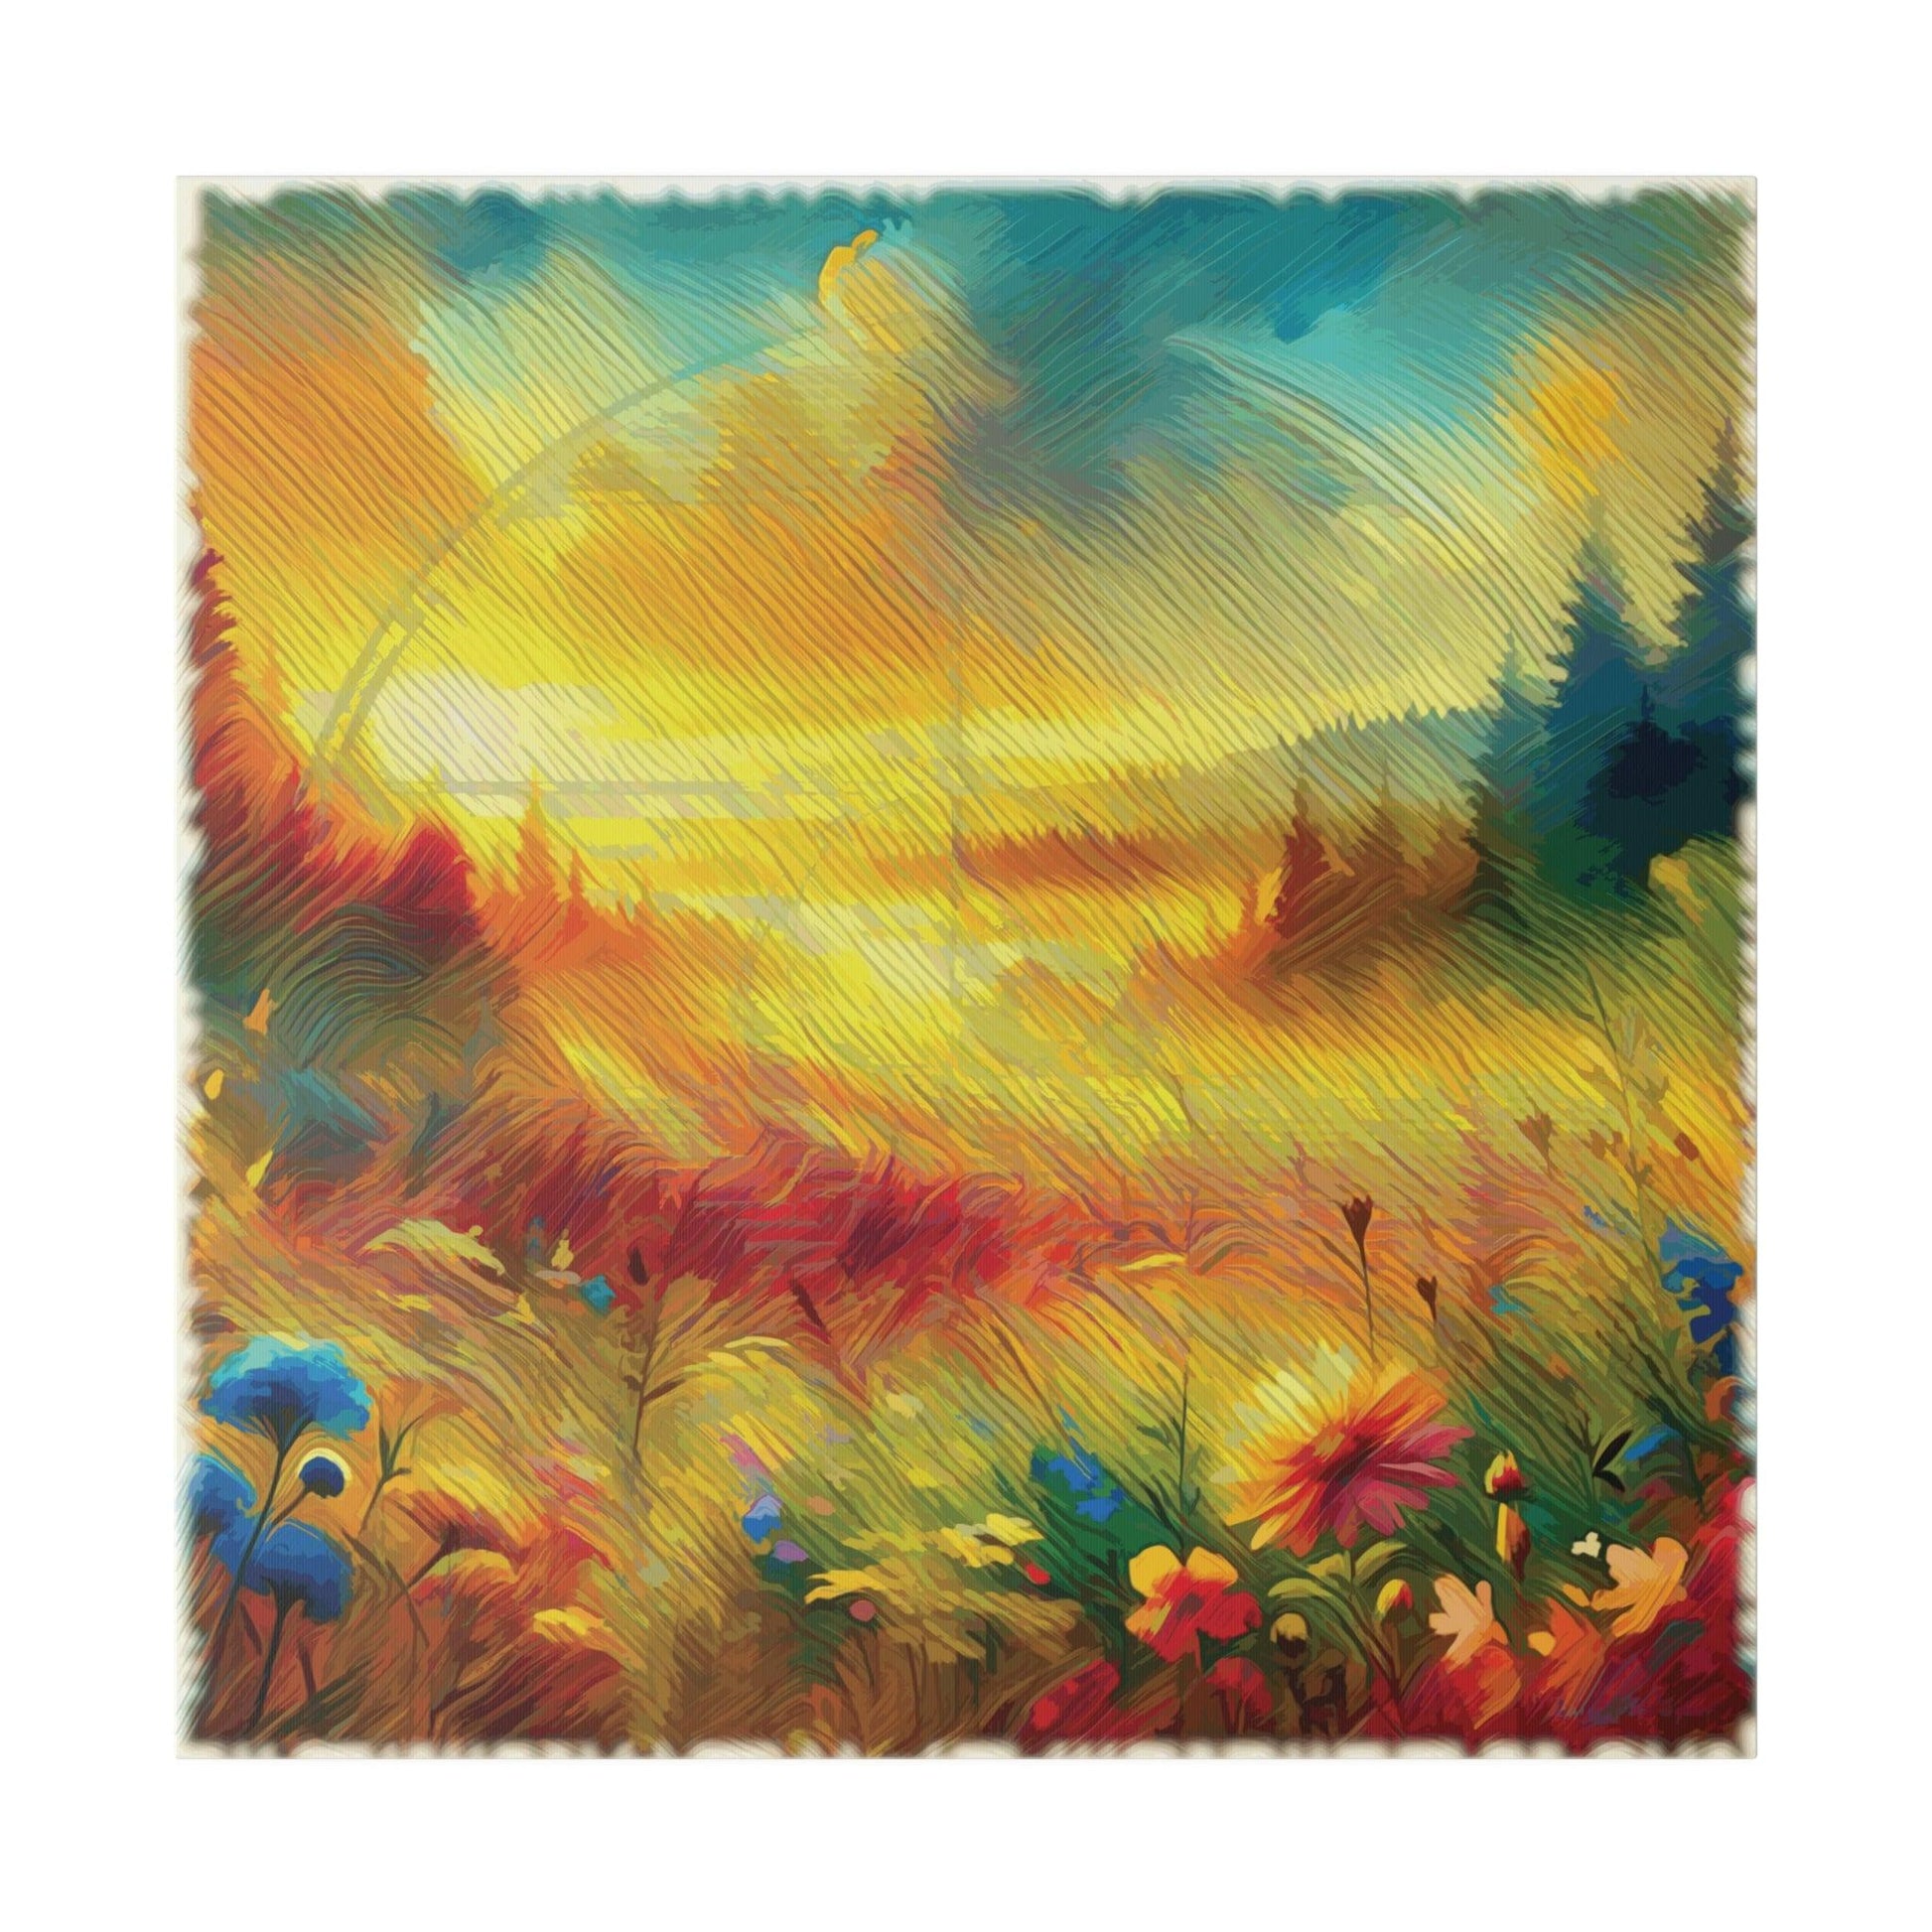 Sunlit Meadow Blossom - Matte Canvas, Stretched, 0.75" - Artsquarenft